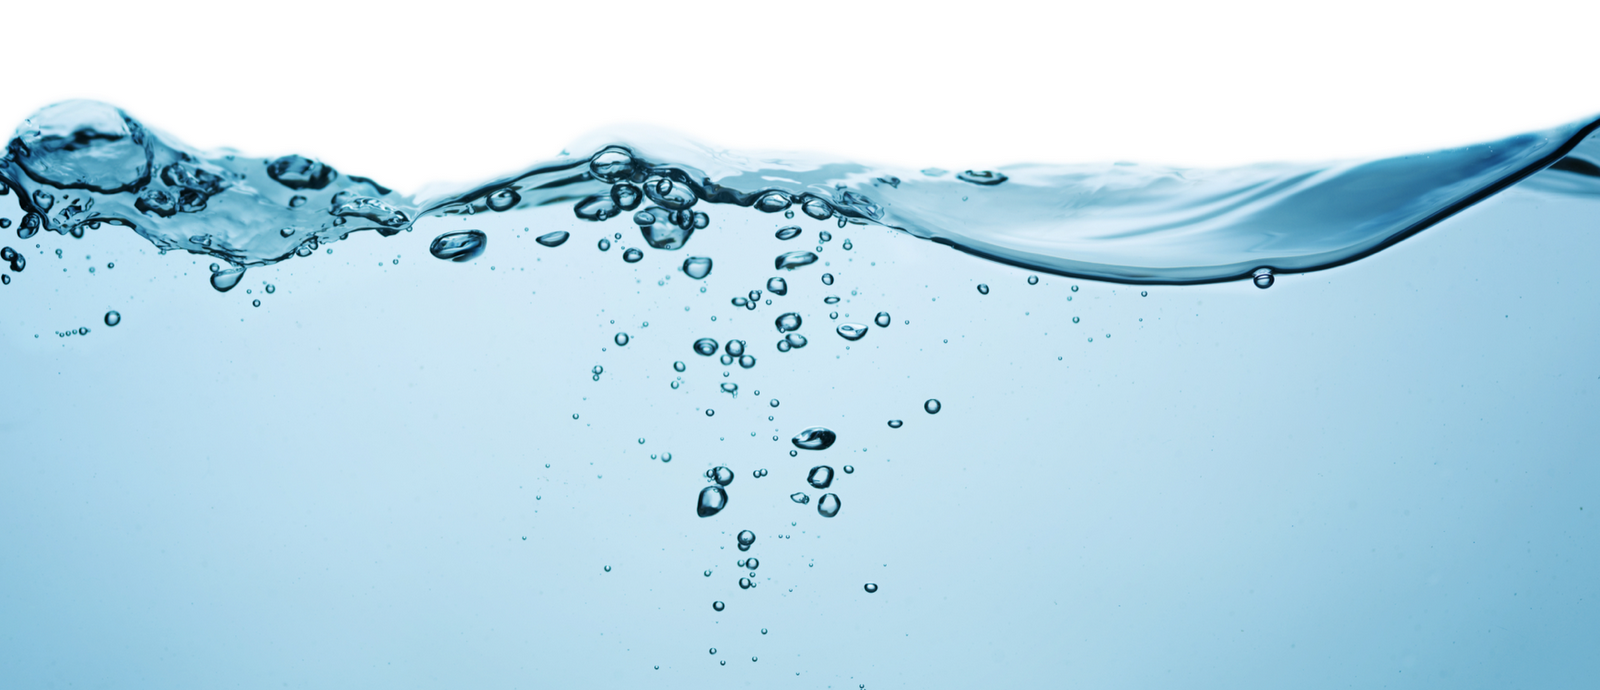 Governo dos Açores divulga dados sobre qualidade da água para consumo humano